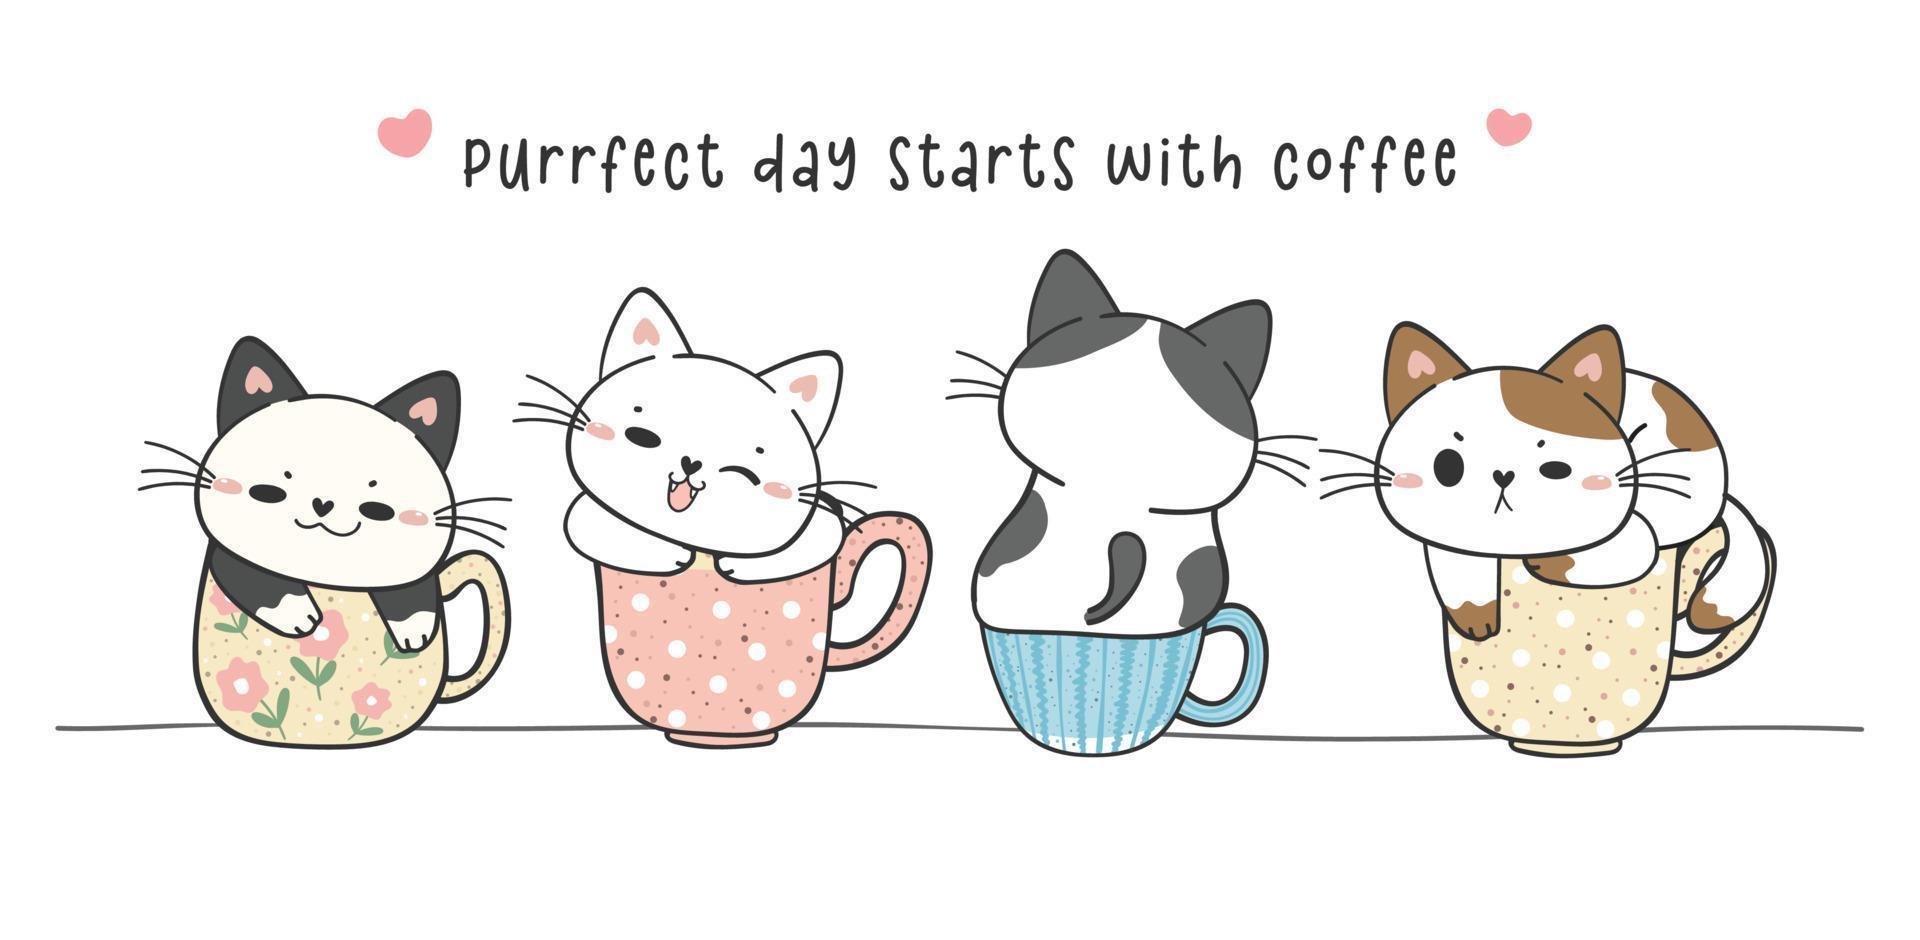 grupo de lindos gatitos divertidos sentados en la colección de tazas de café, día perfecto con café, adorable animal mascota dibujando a mano doodle vector